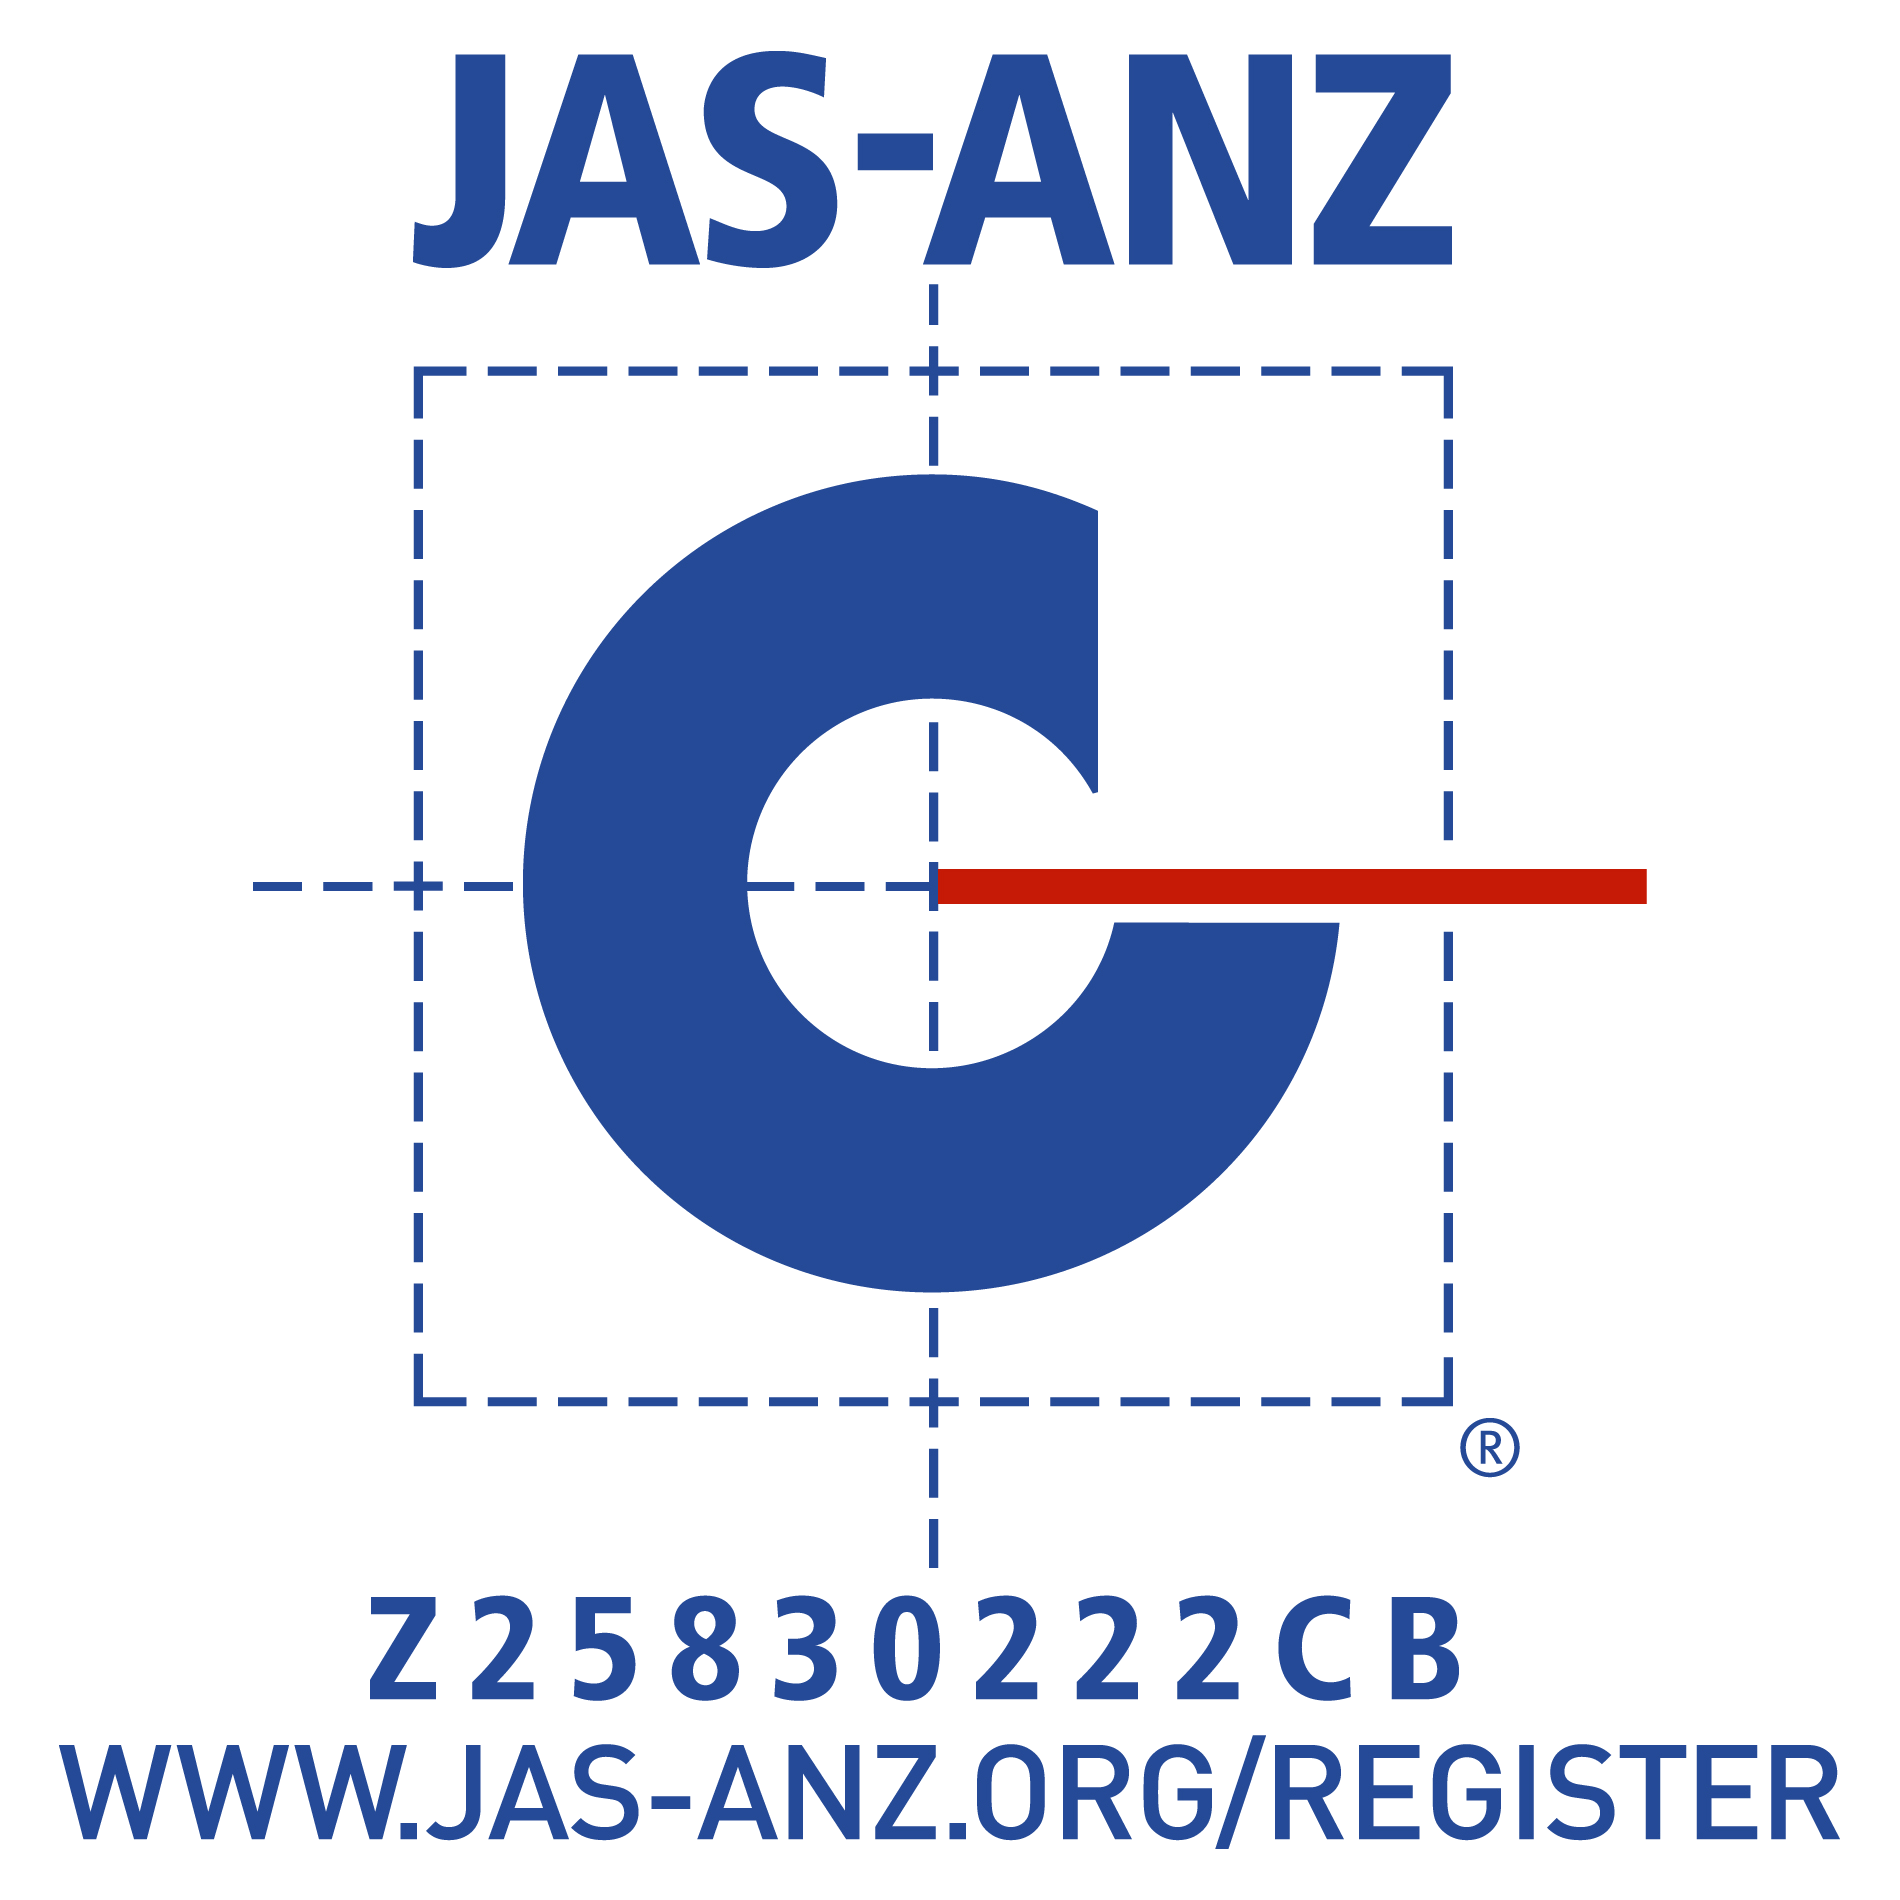 JASANZ RGB with URL+No